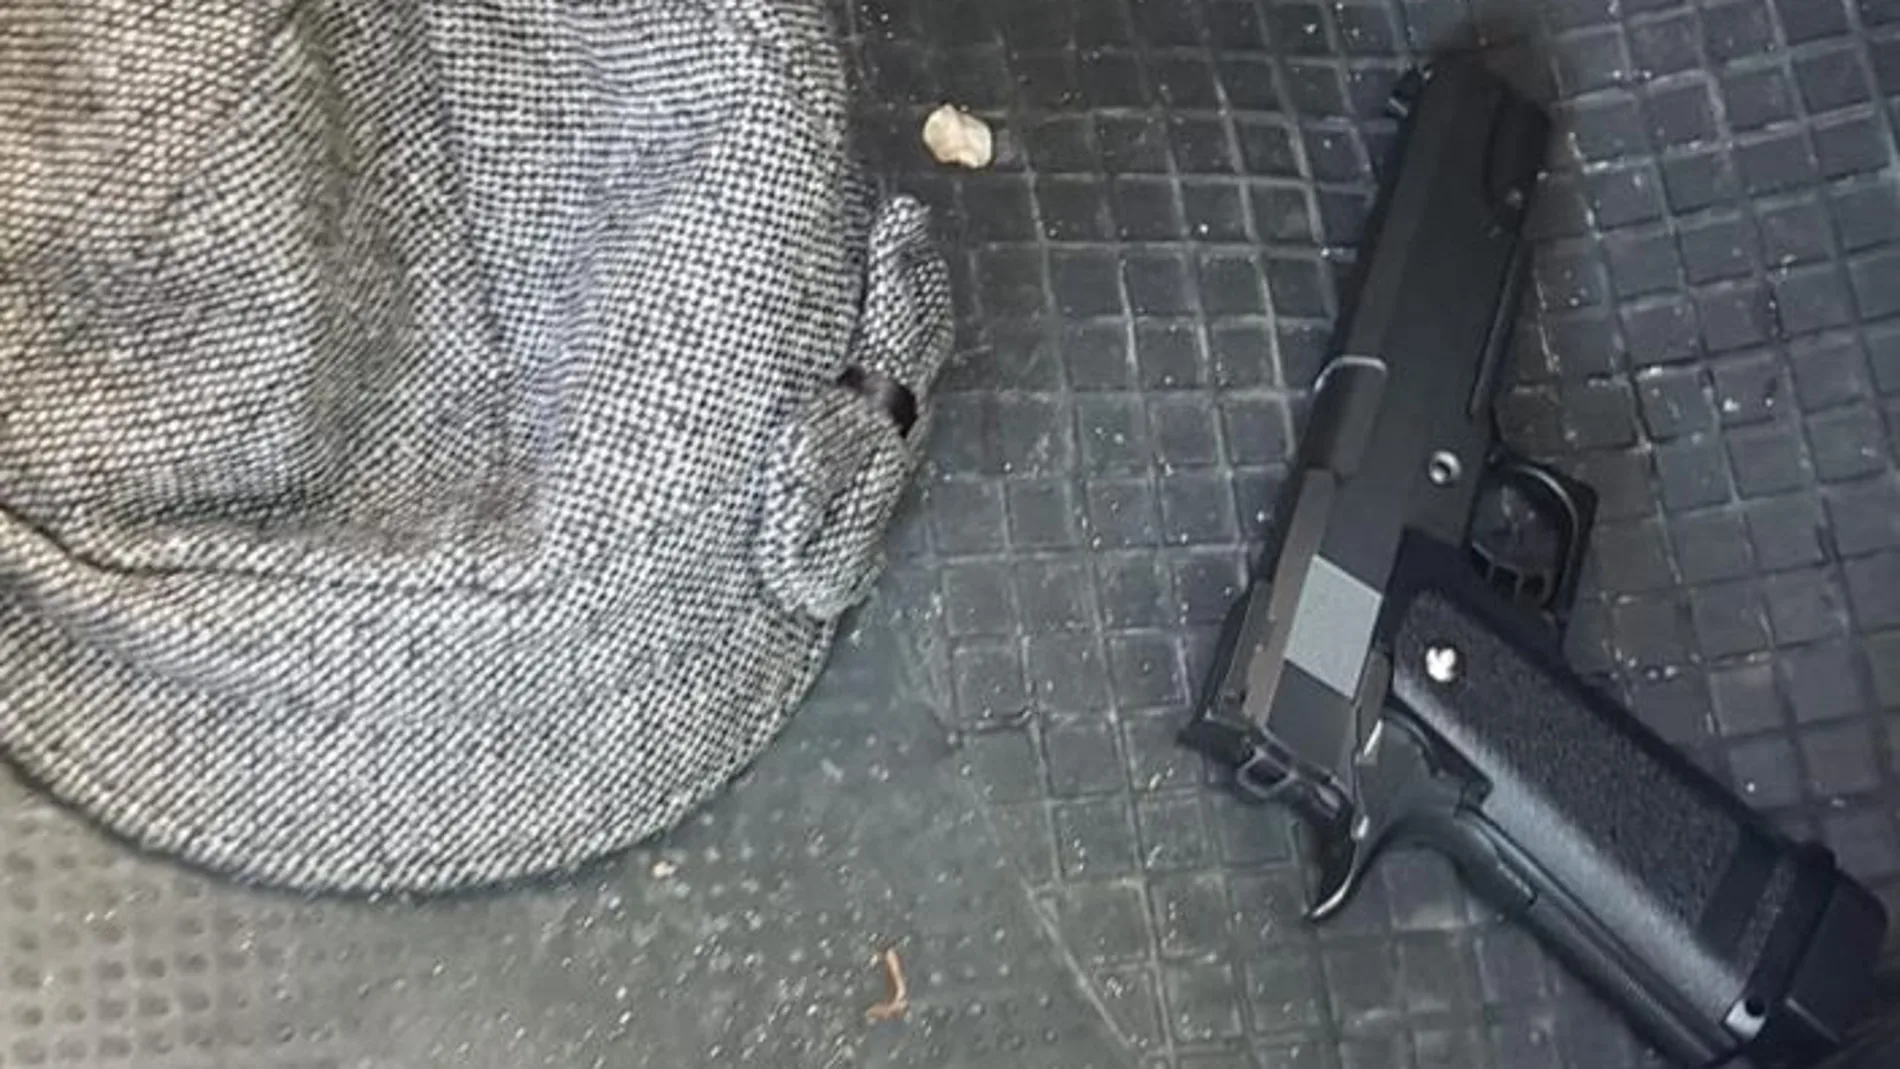 Pistola automática simulada con la que una mujer en Moratalaz, Madrid, robó un coche a punta de pistola